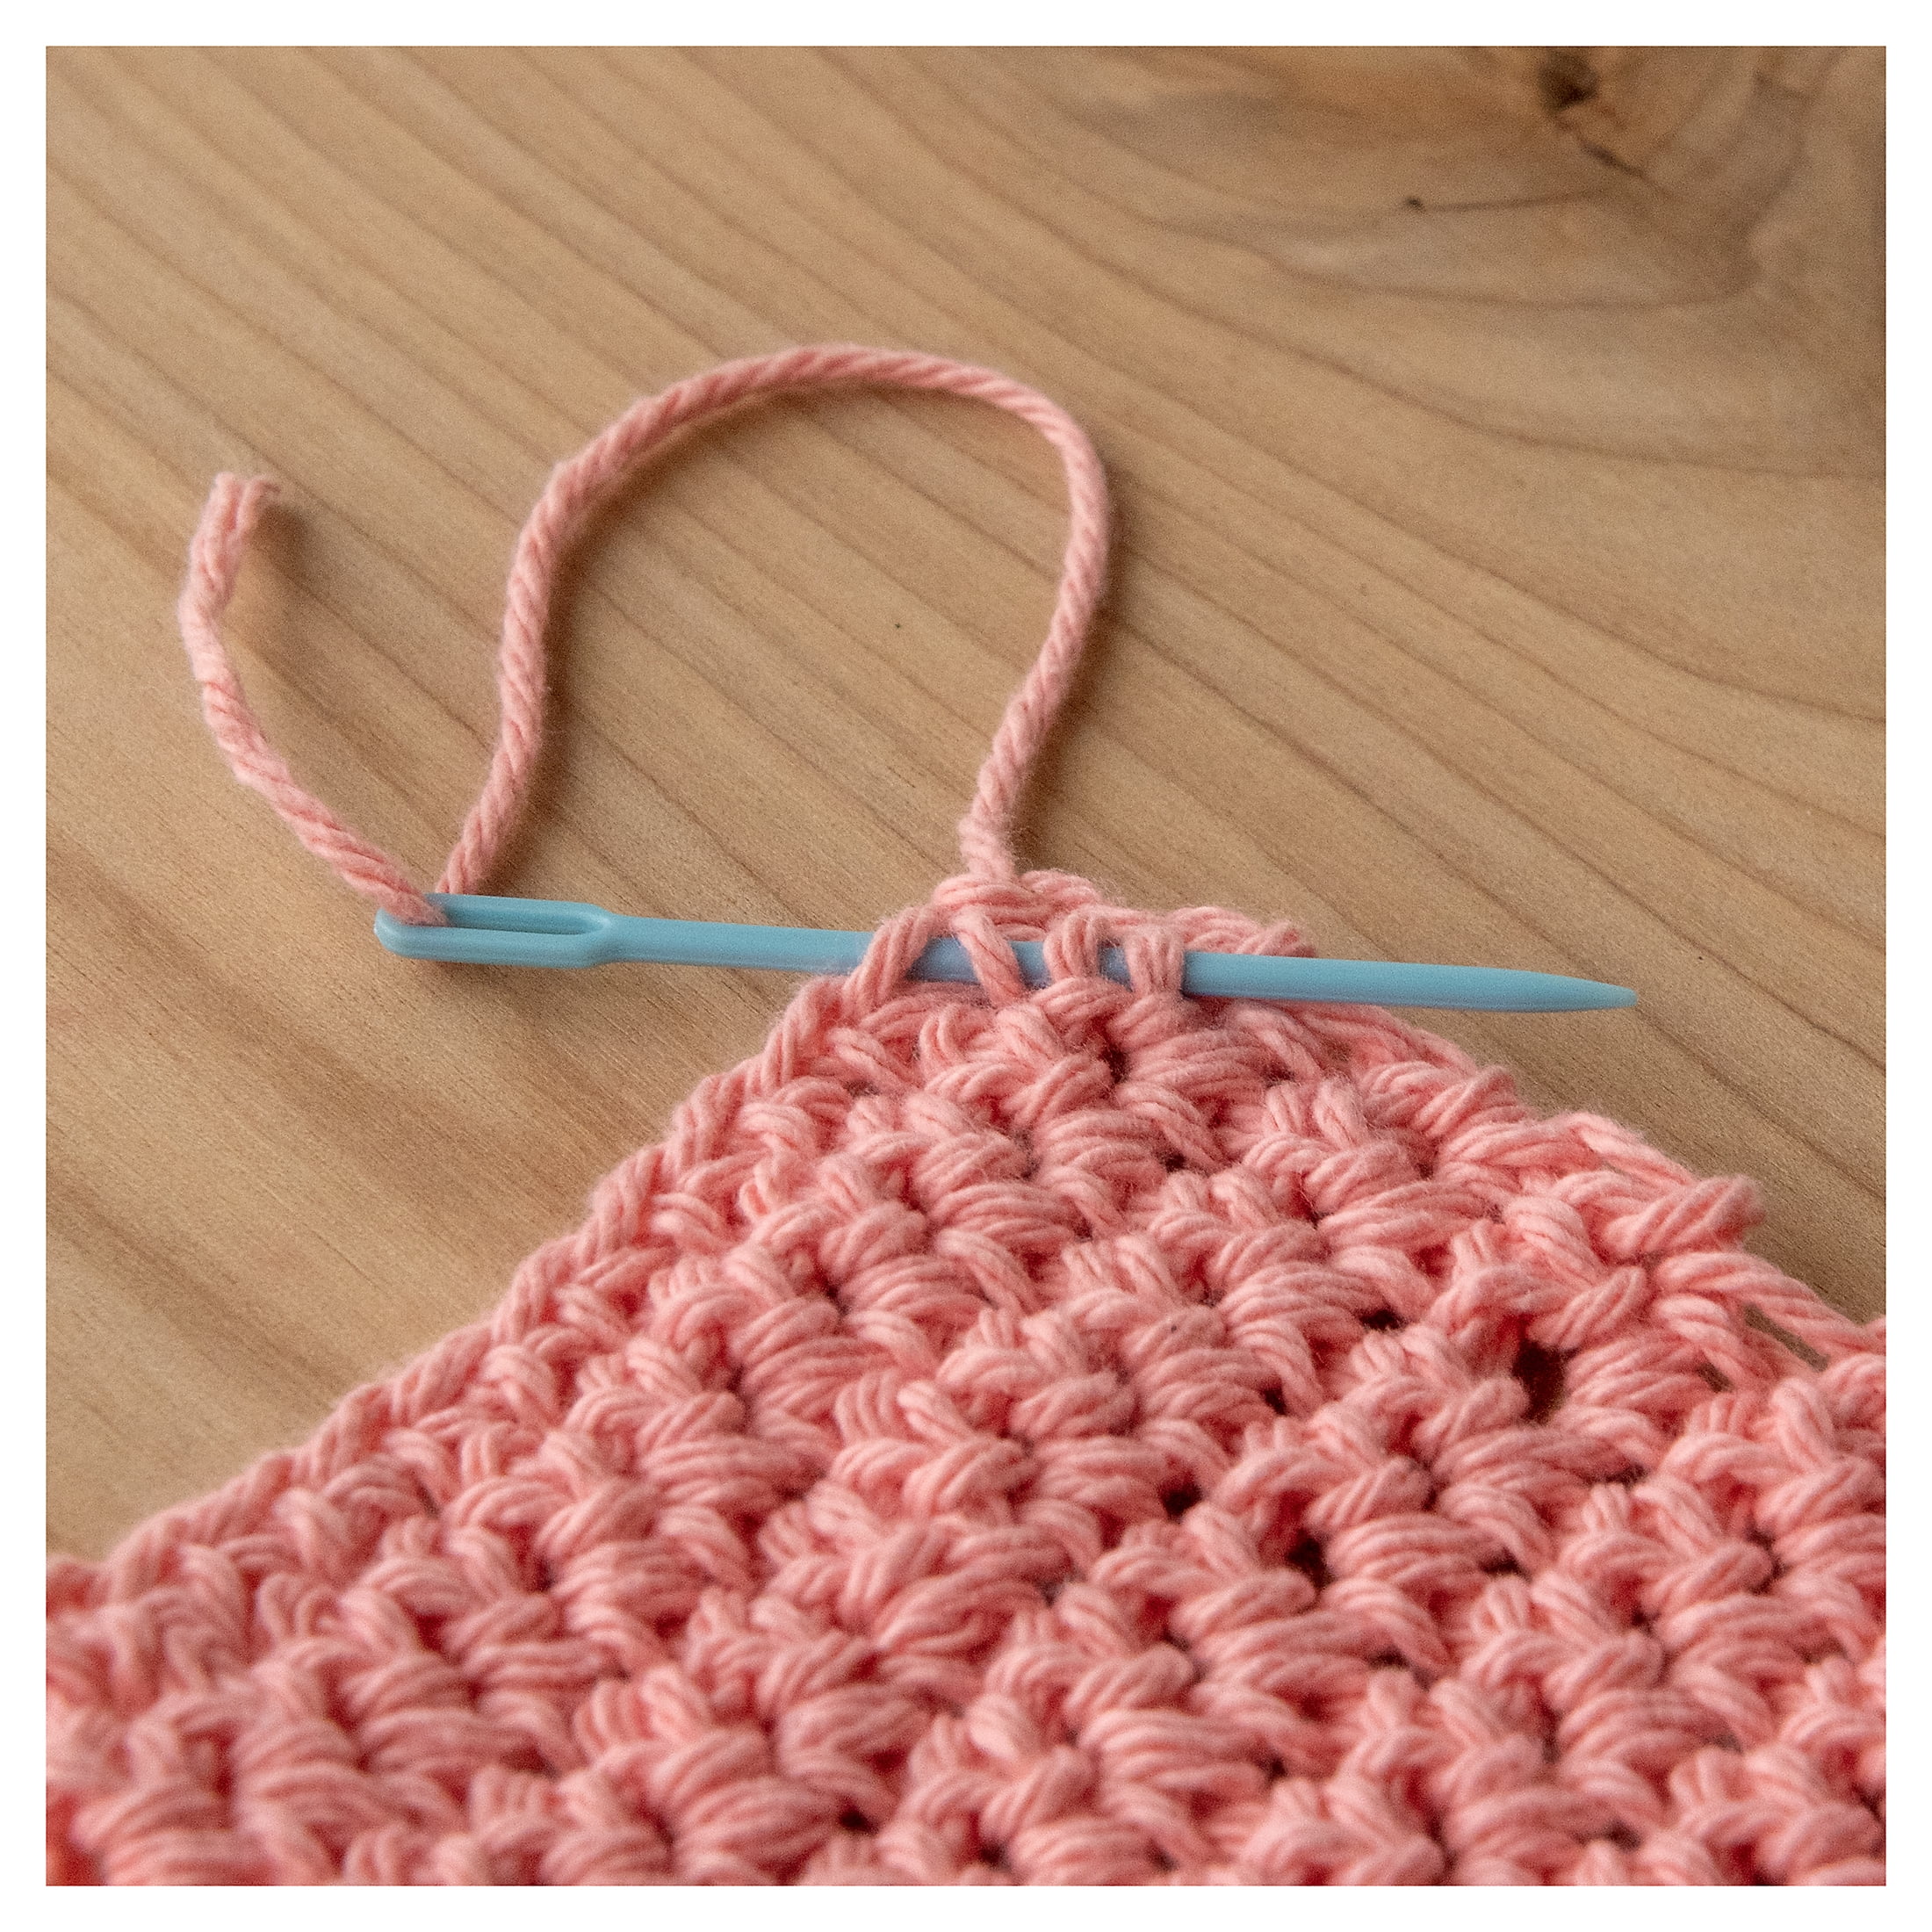 Plastic Yarn Needle for Knitting, 2.75 and 3.5 sizes, multi-packs, b –  KarensHobbyRoom